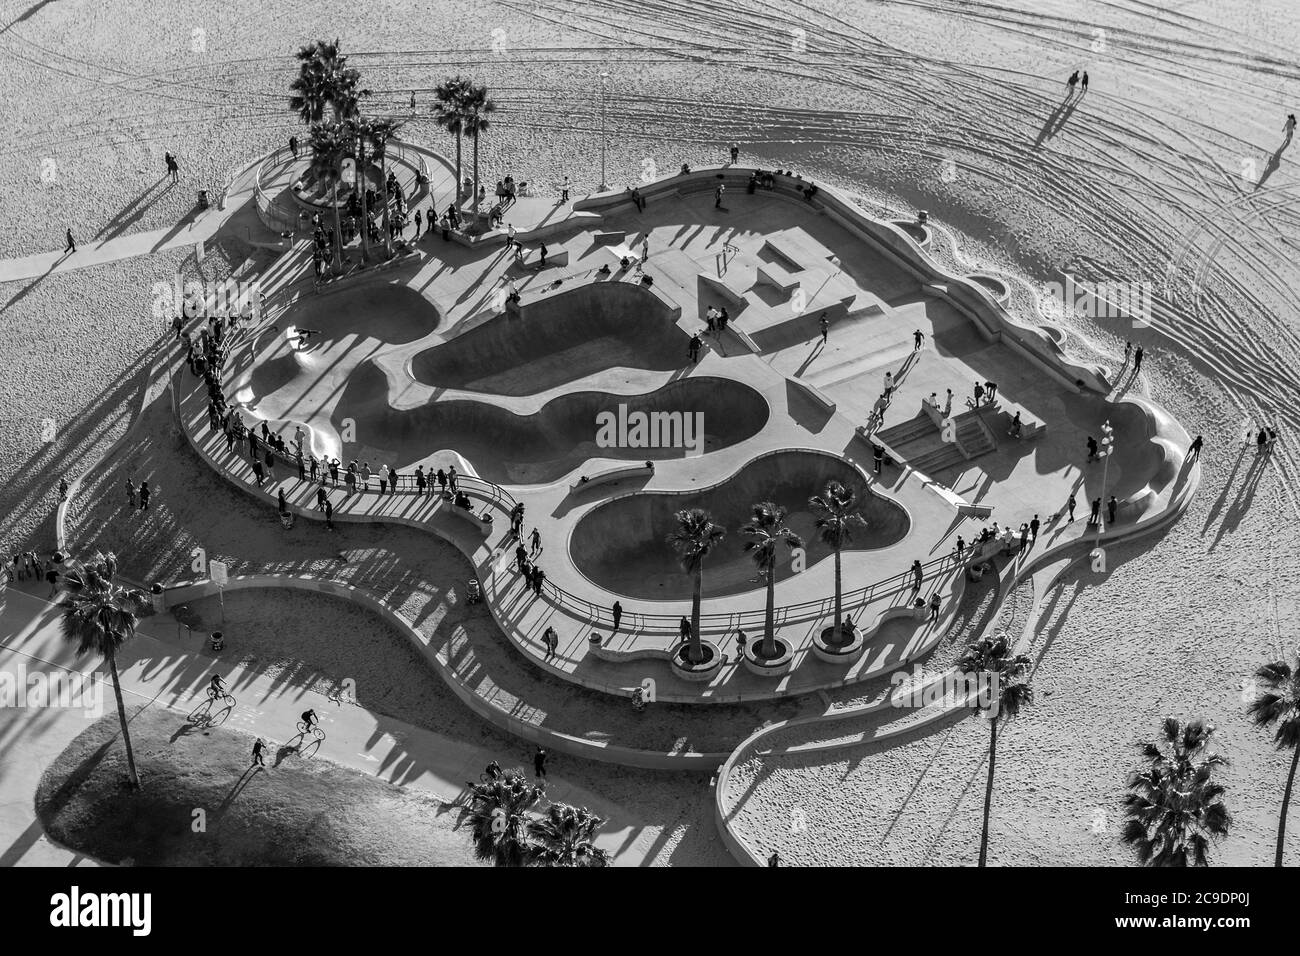 Vue aérienne en noir et blanc du célèbre parc de skateboard de Venice Beach à Los Angeles, Californie. Banque D'Images